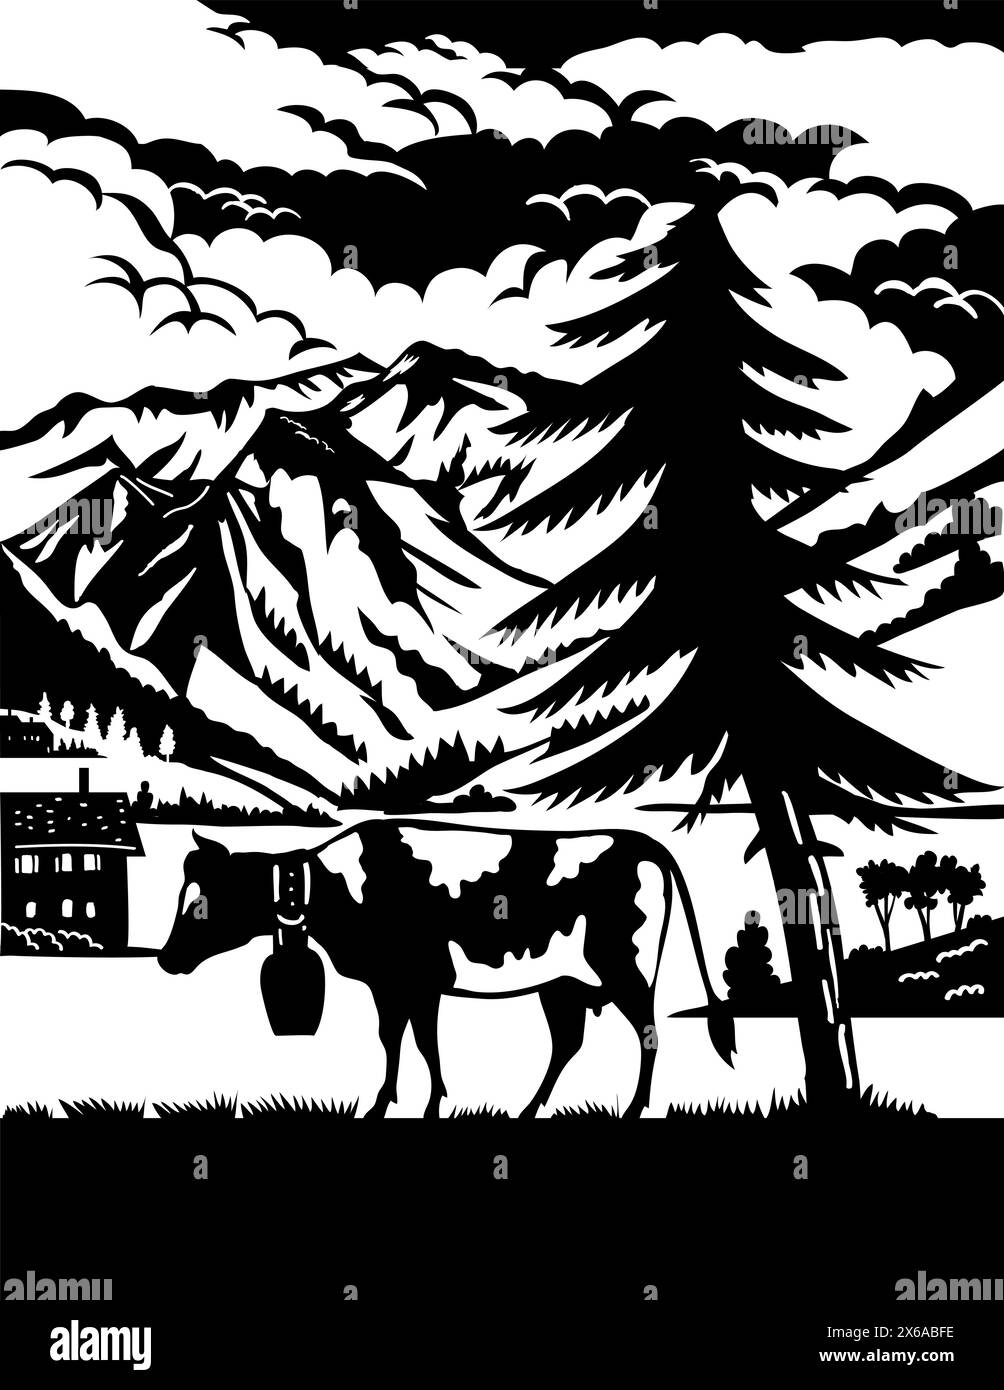 Schweizer Scherenschnitte oder Scheren geschnittene Illustration einer Kuh in Elm Sernftal mit Glarusgipfeln in der Schweiz im Kreis gemacht in p Stock Vektor